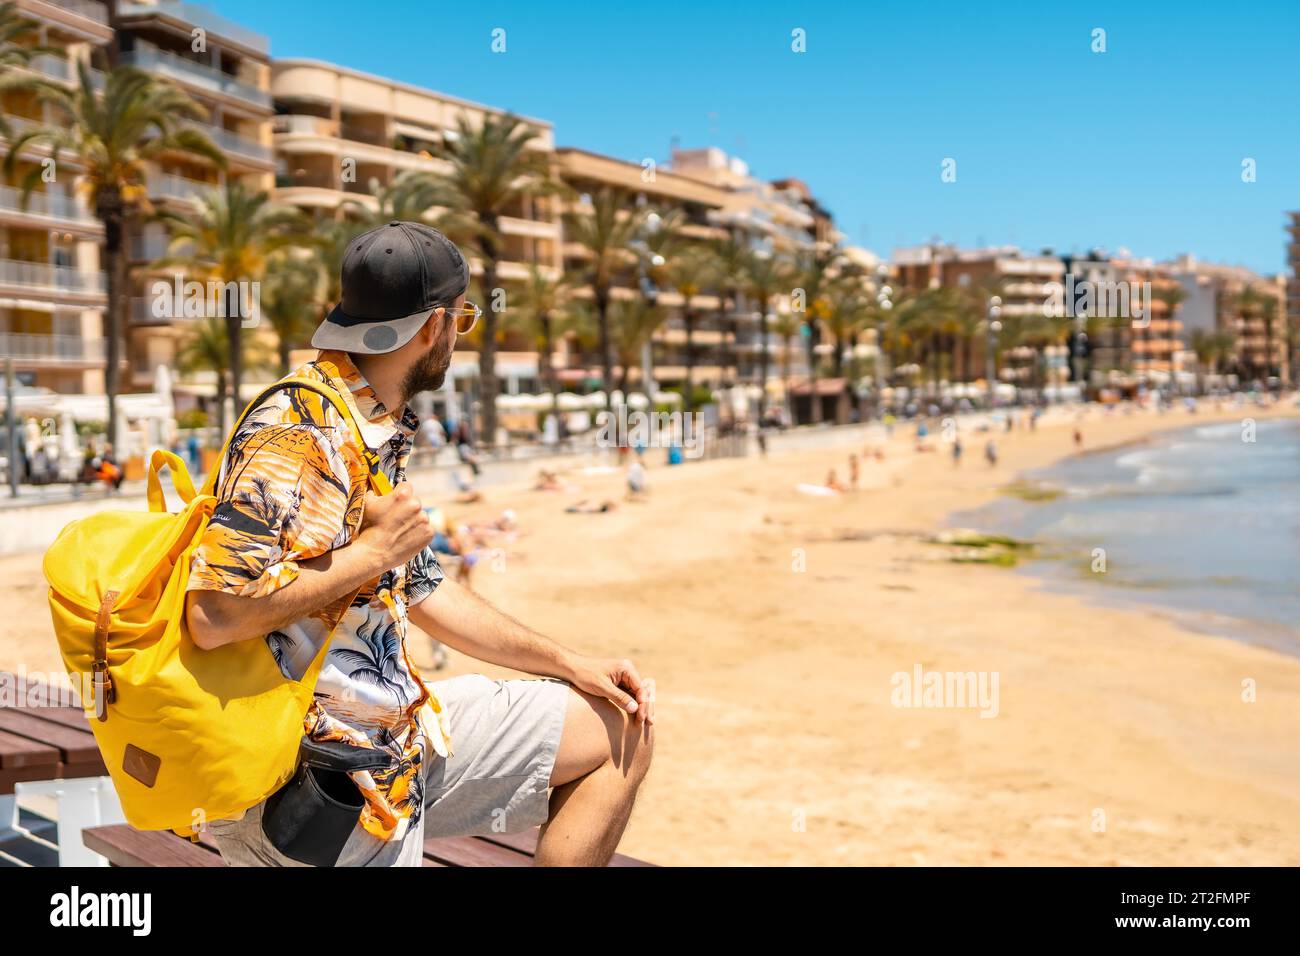 Ein junger ausländischer Tourist an der Playa del Cura in der Küstenstadt Torrevieja, Alicante, Valencia. Spanien, Mittelmeer Stockfoto